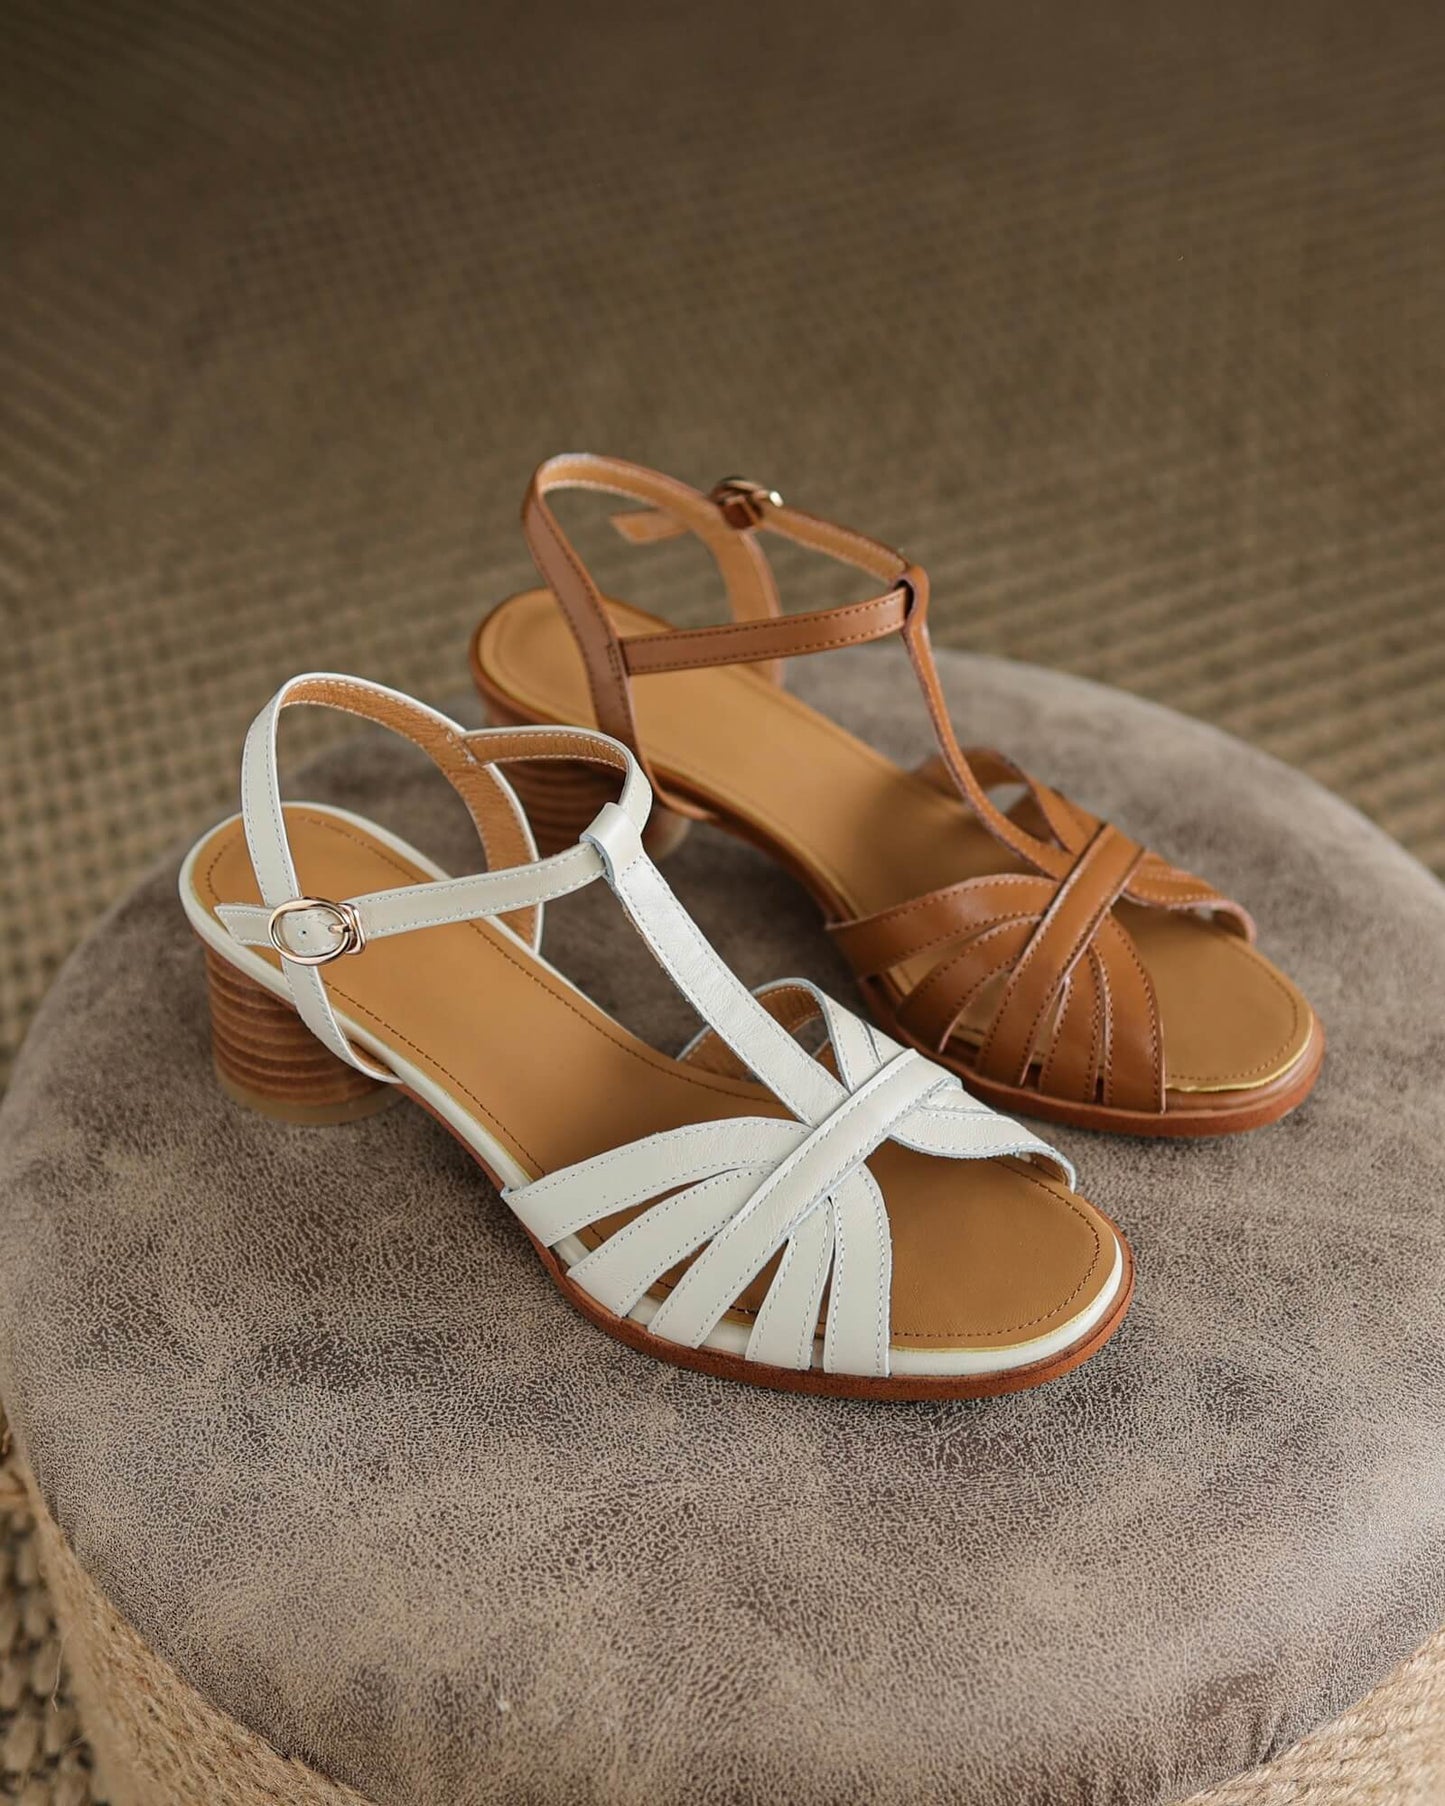 Alton - Leather Sandals